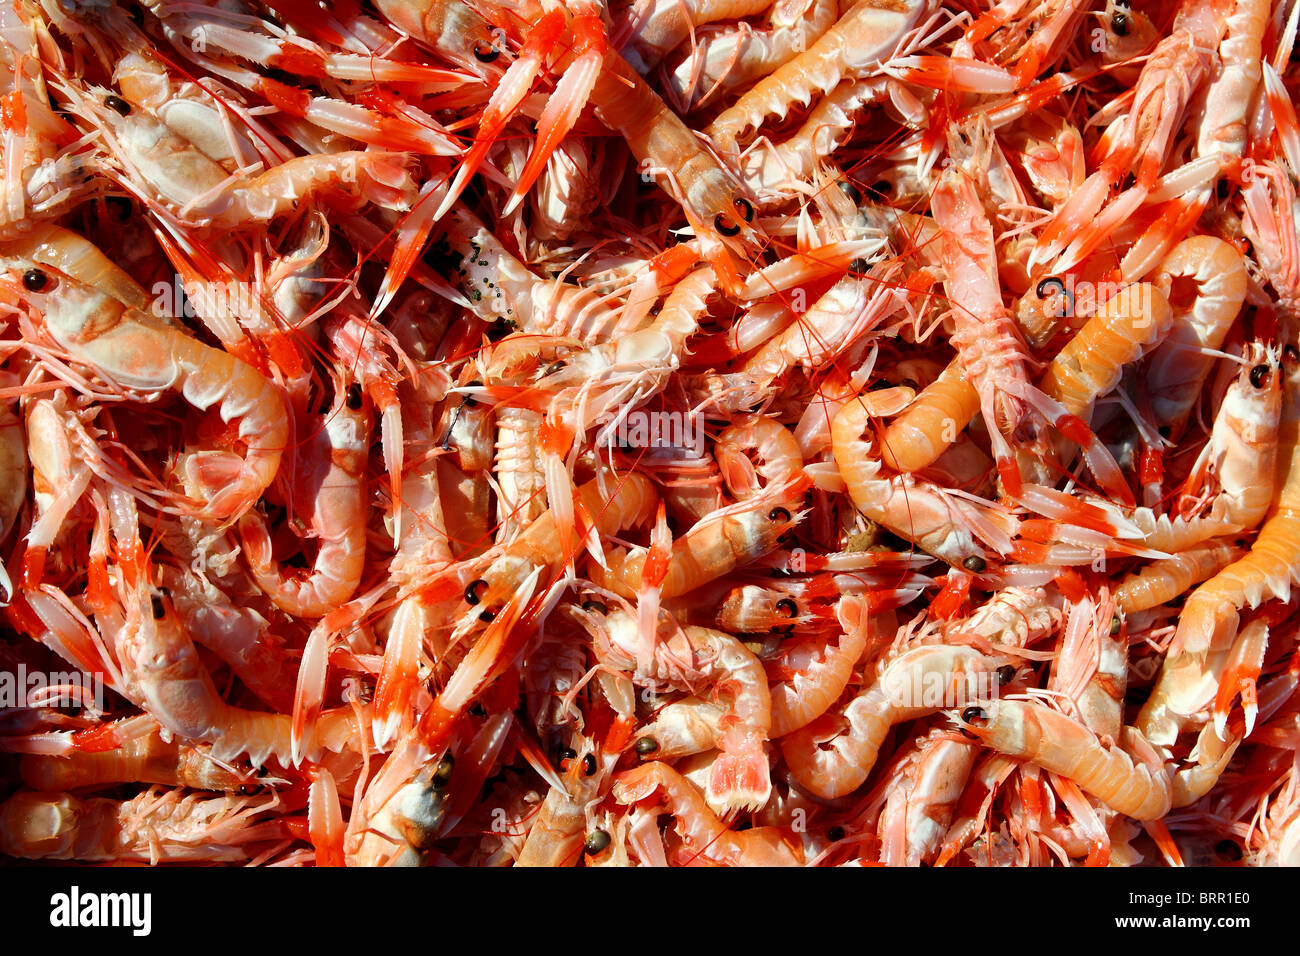 Crayfish Nephrops Norvegicus many seafood market catch Stock Photo